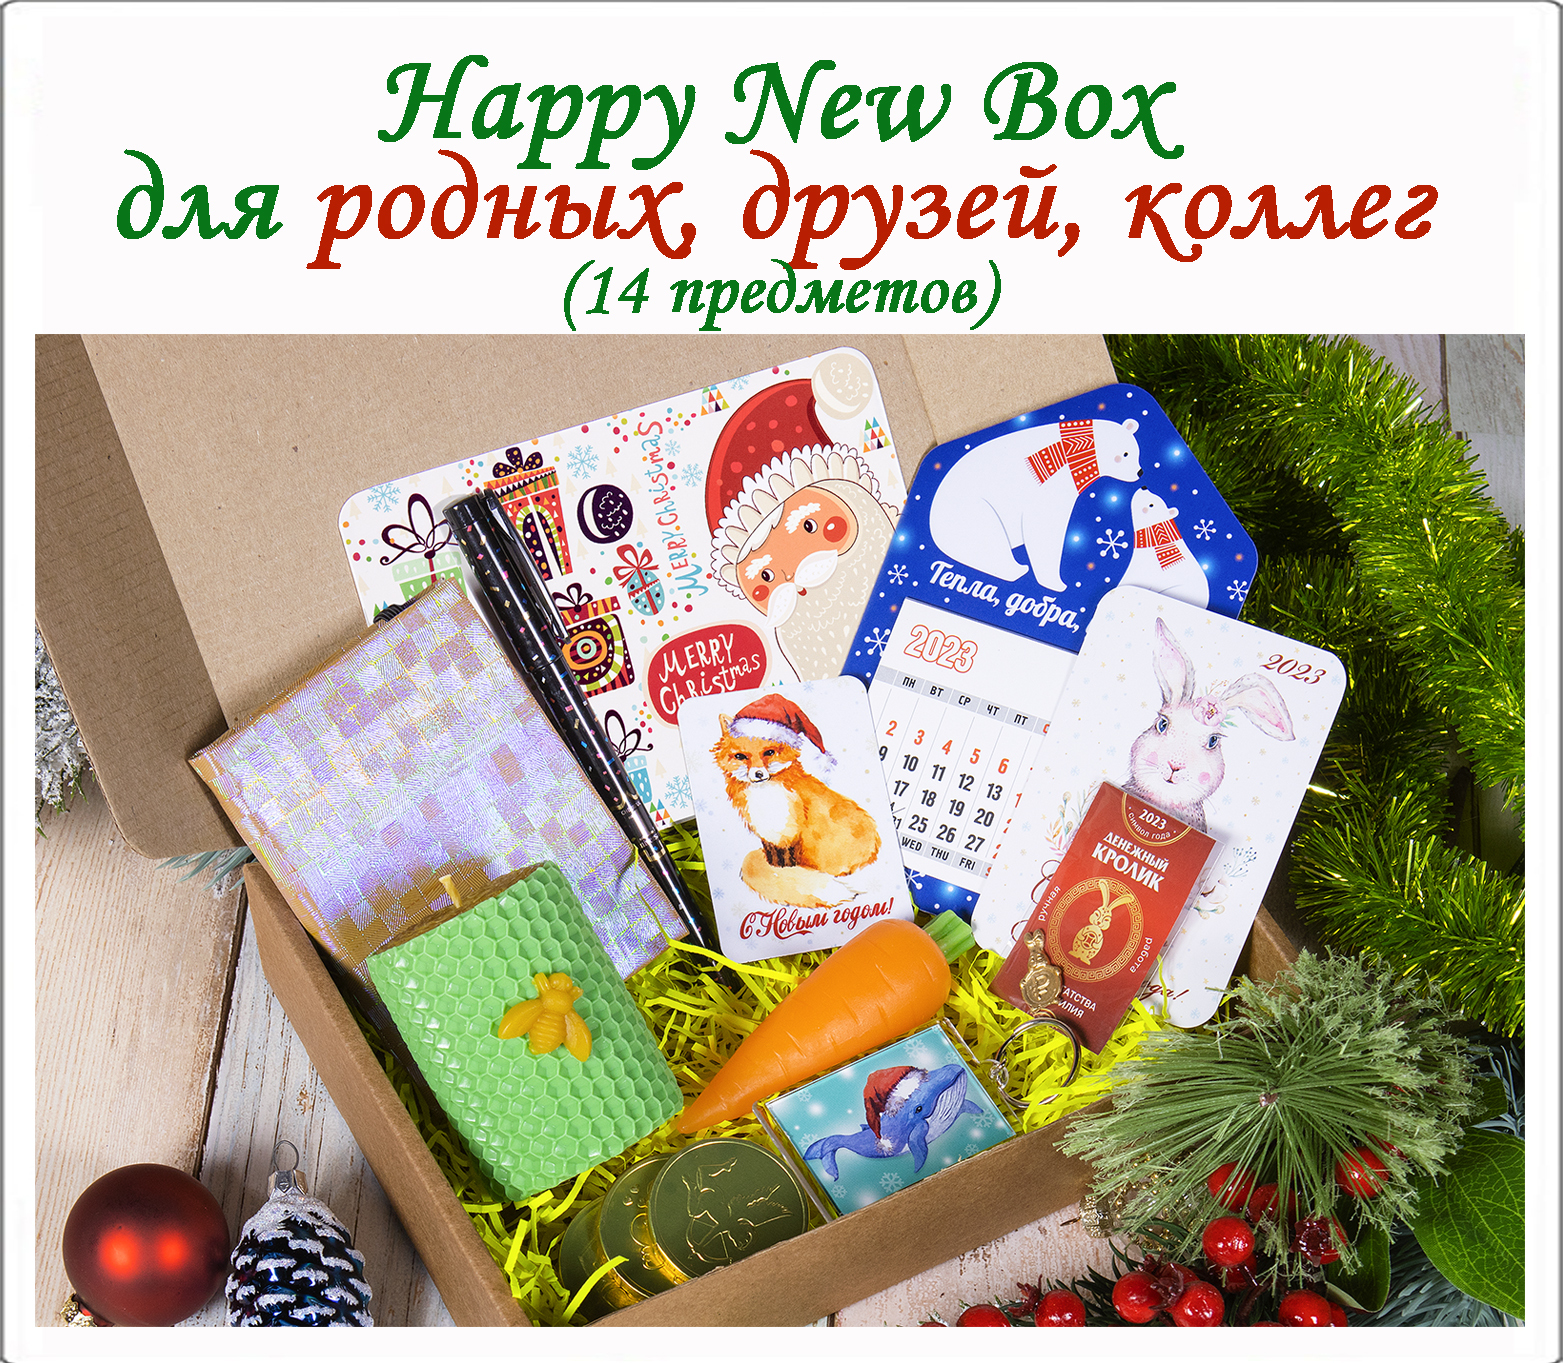 Happy New Box - Родным, Друзьям, Коллегам